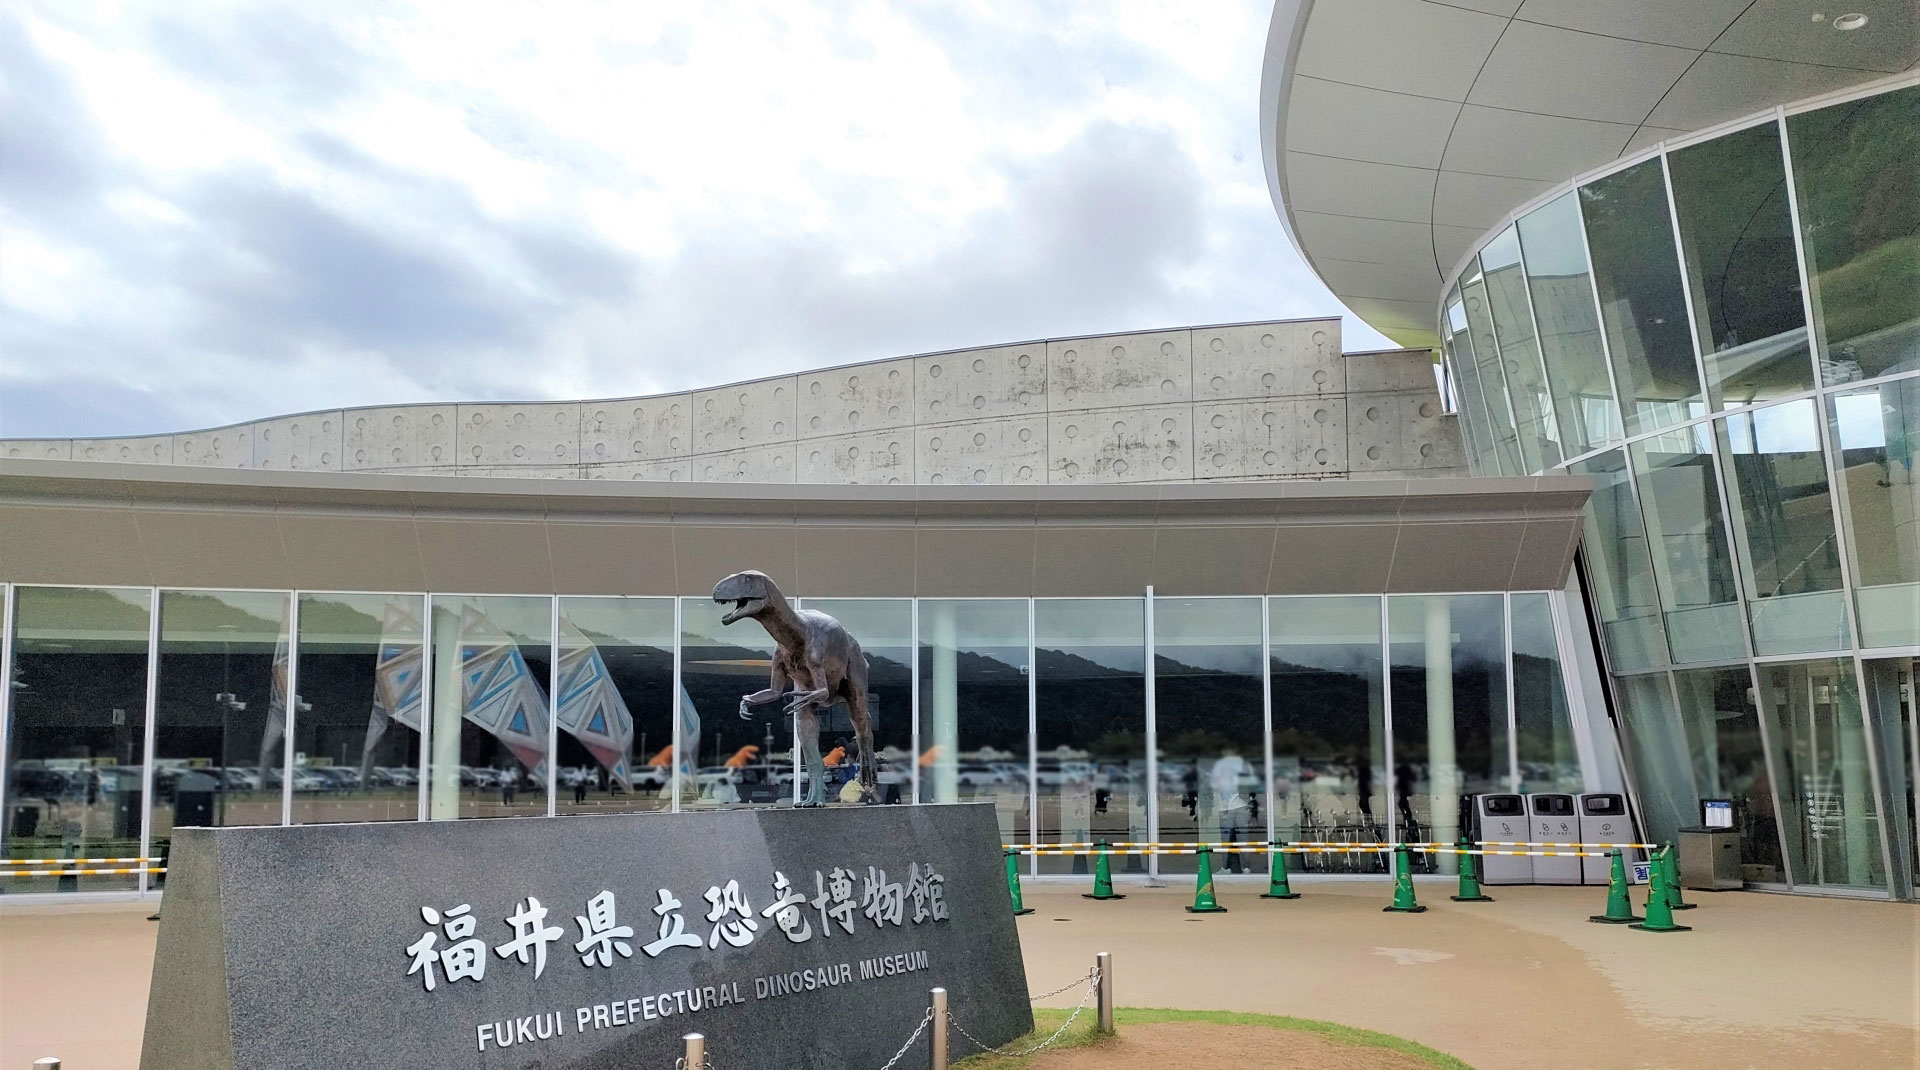 緒ばた周辺の観光地・福井県立恐竜博物館画像